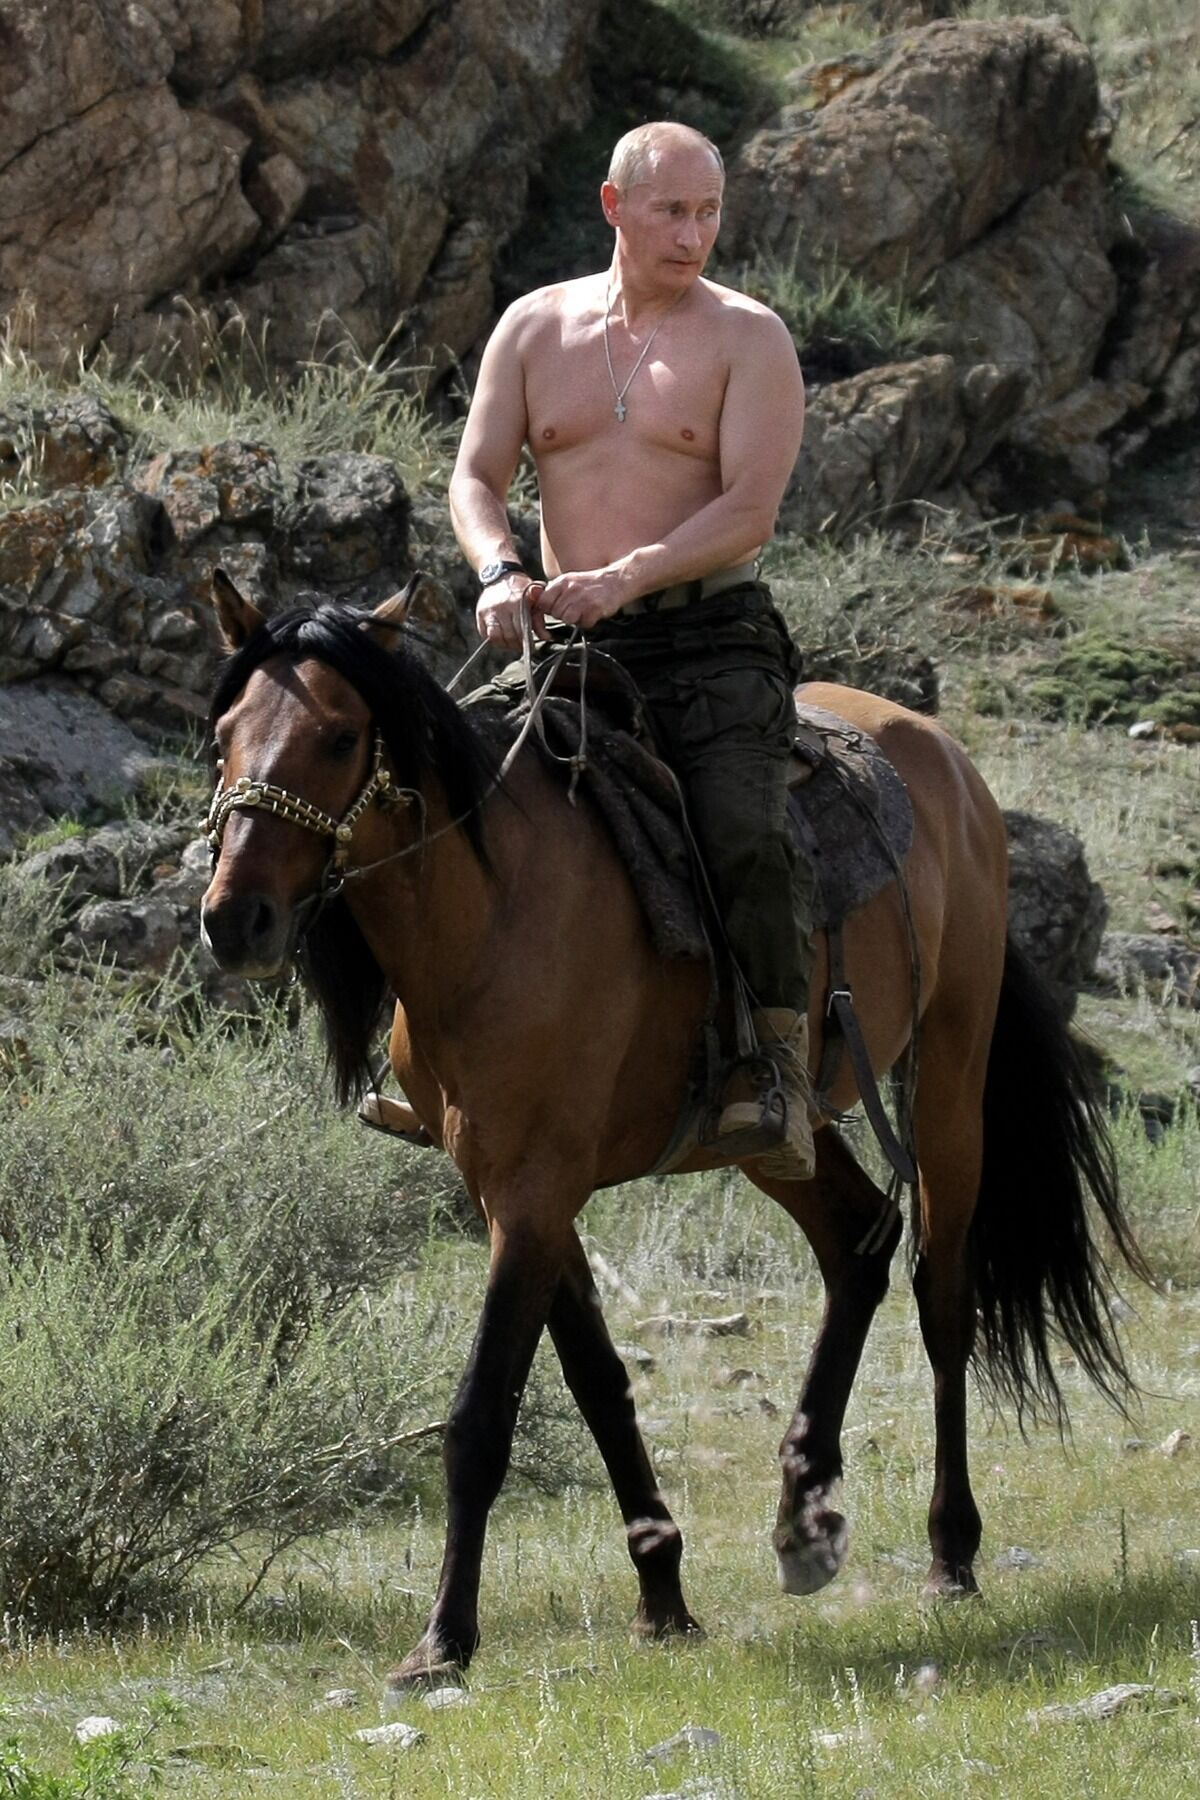 Подборка фото, которые Путин мог бы использовать на сайтах знакомств